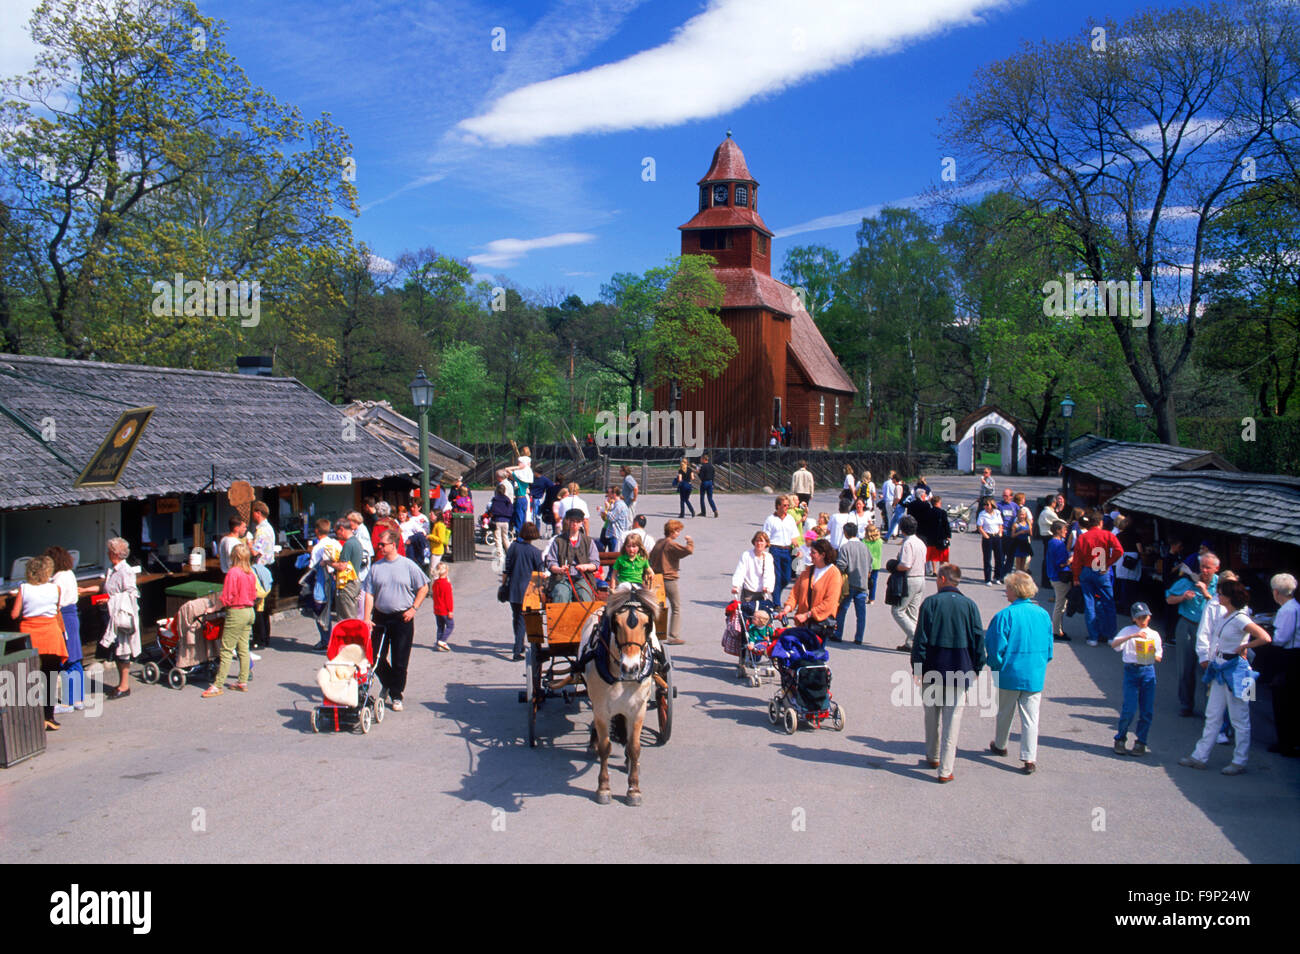 Musei a cielo aperto, zoo, giostre e negozi a Skansen parco a tema a Stoccolma Foto Stock